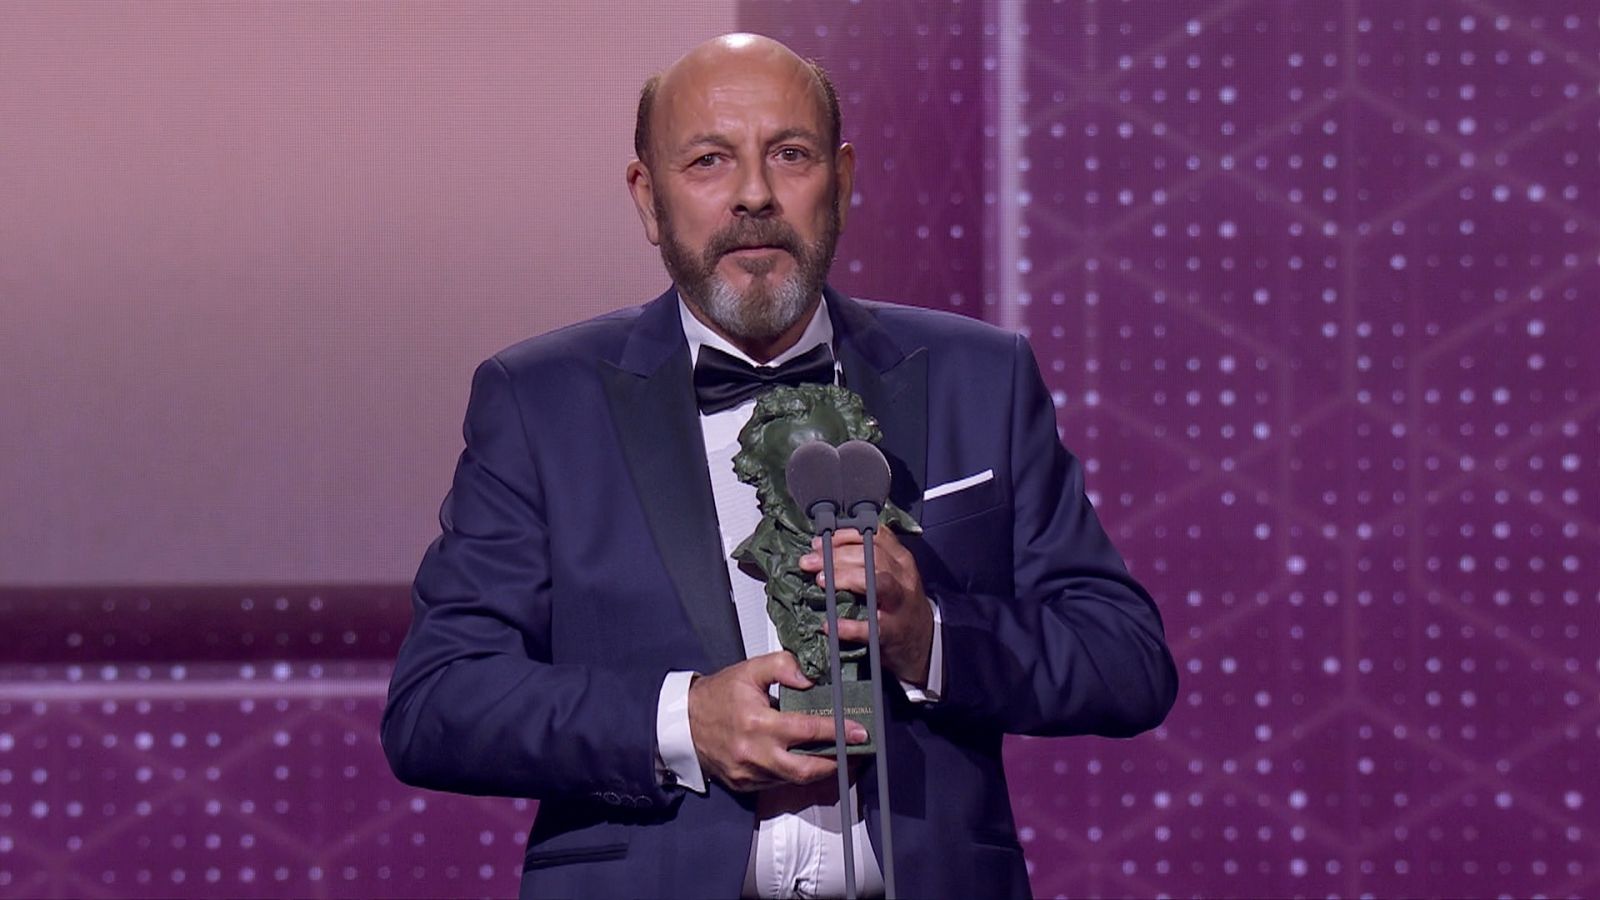 Premios Goya 2020: 'Intemperie', de Javier Ruibal gana el Goya a mejor canción original - RTVE.es